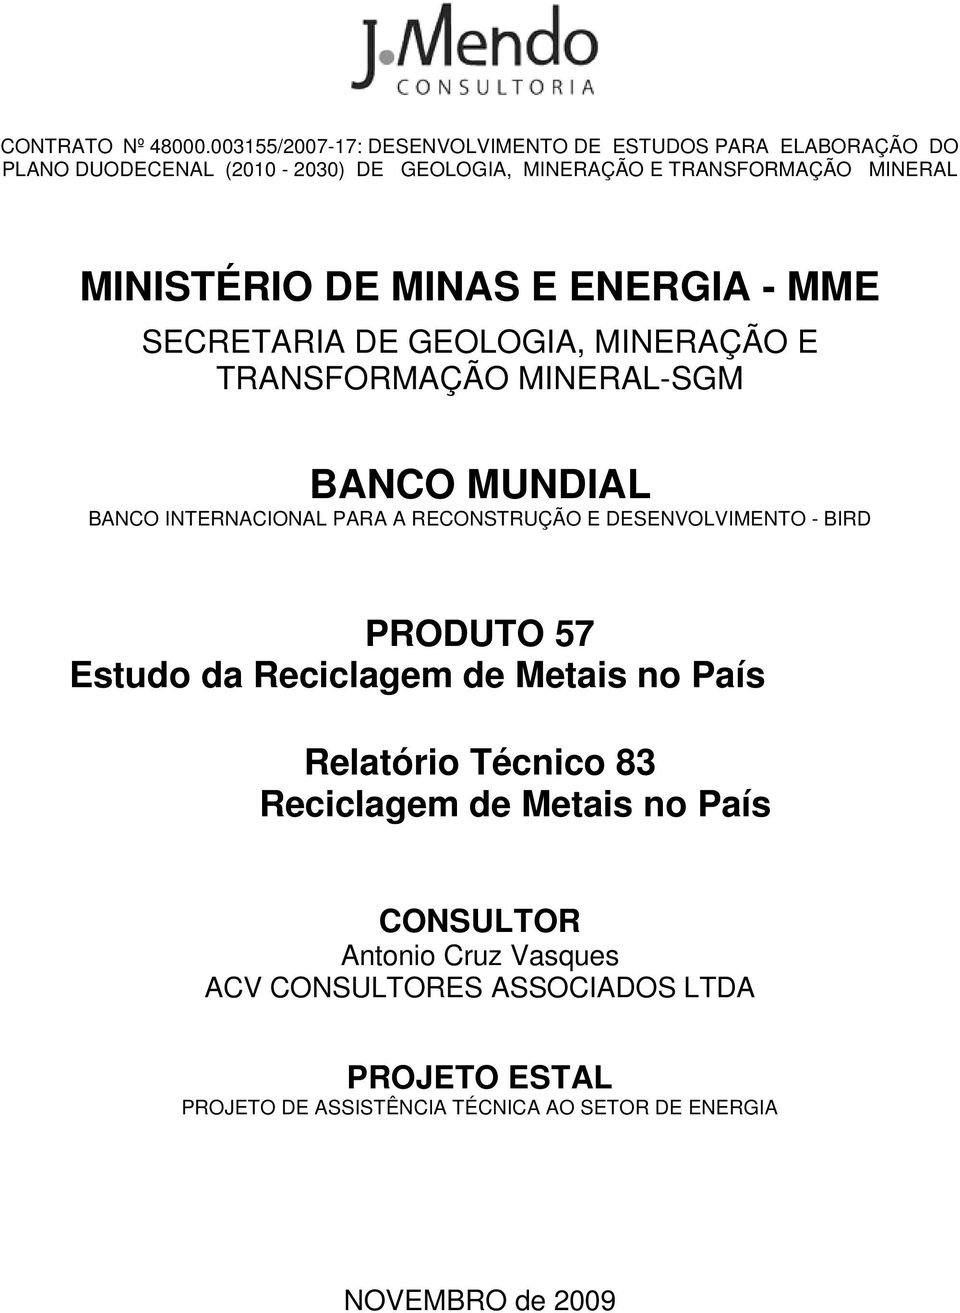 MINISTÉRIO DE MINAS E ENERGIA - MME SECRETARIA DE GEOLOGIA, MINERAÇÃO E TRANSFORMAÇÃO MINERAL-SGM BANCO MUNDIAL BANCO INTERNACIONAL PARA A